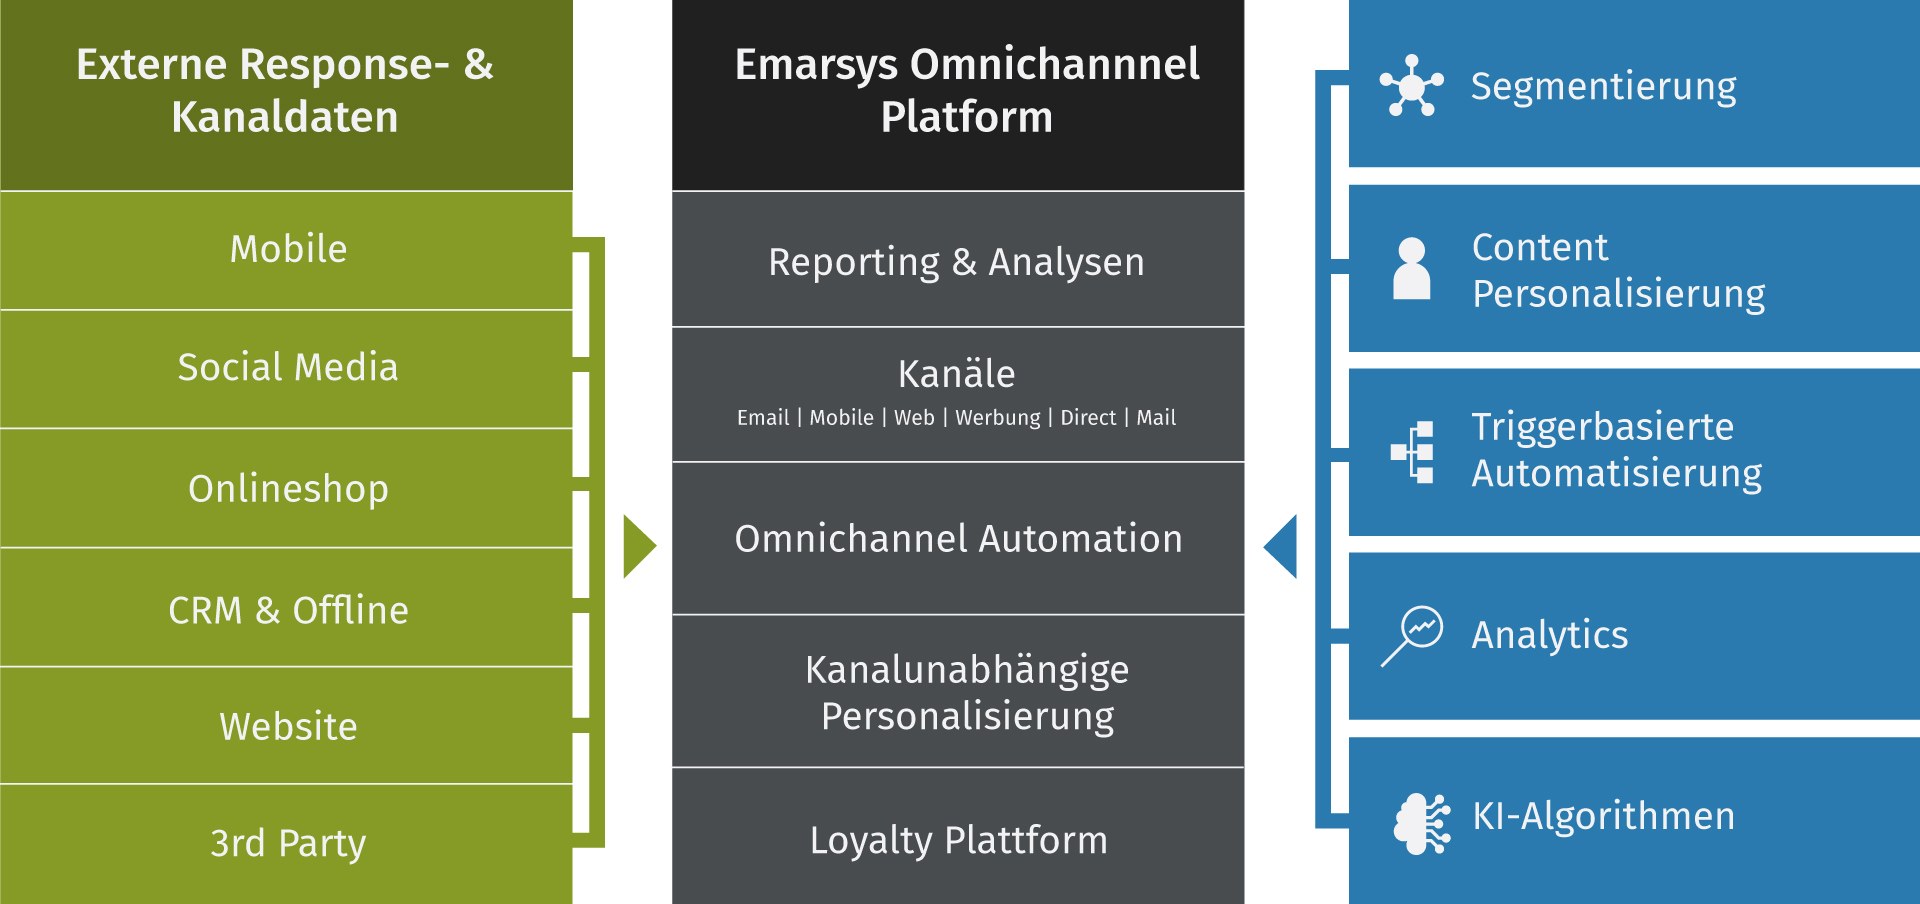 Emarsys Omnichannel Automation Platform | Agentur hmmh